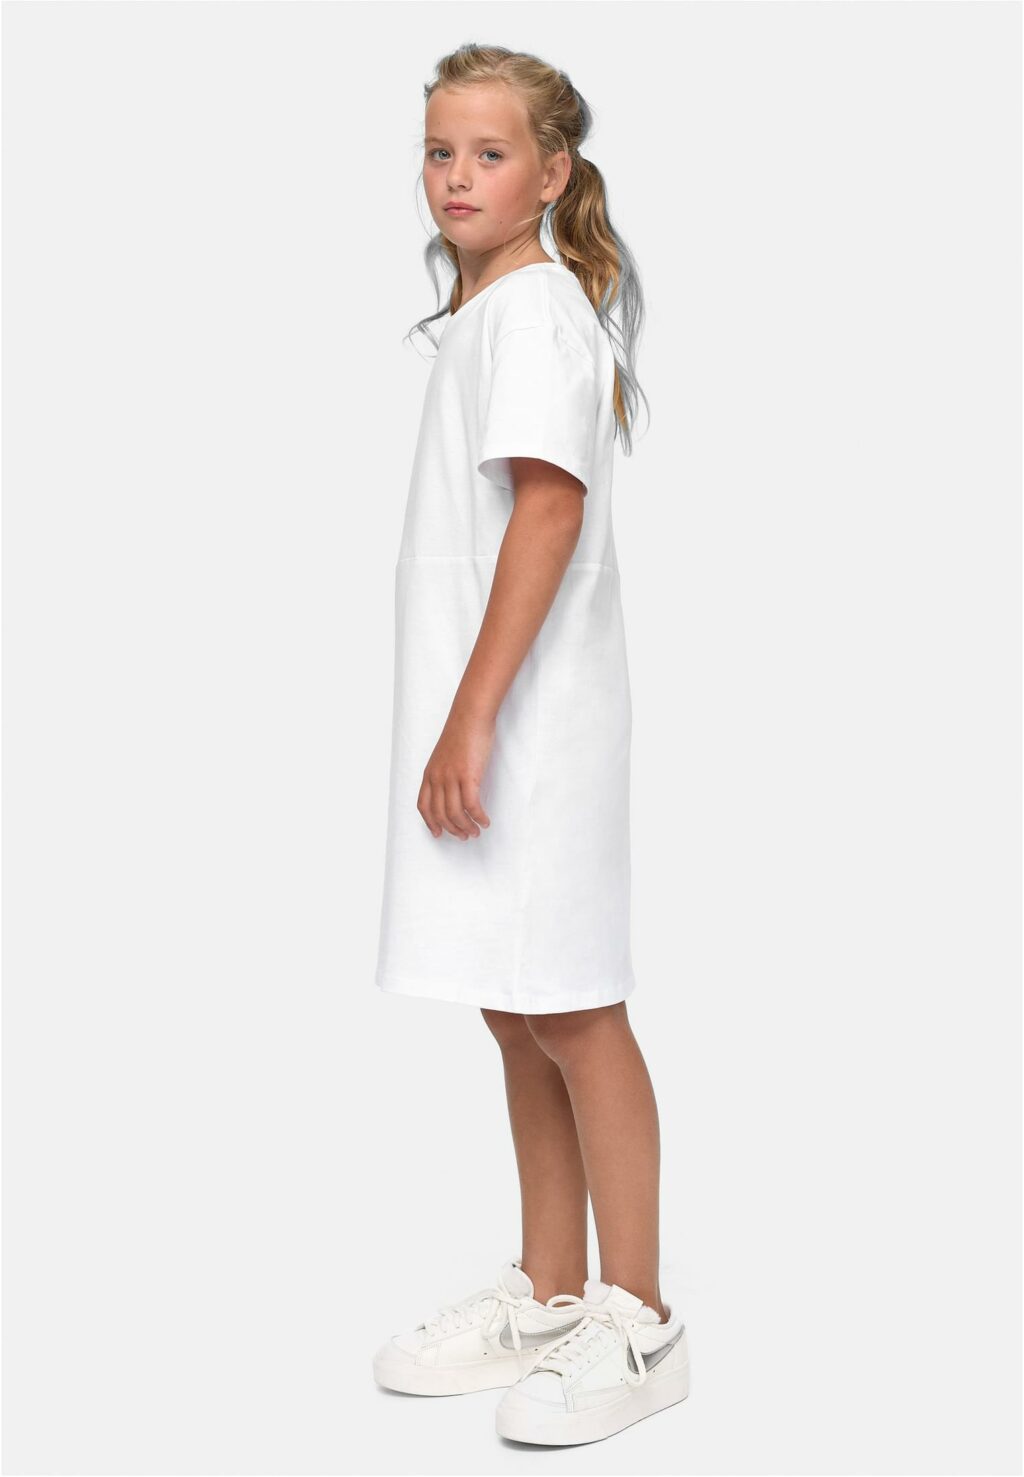 Girls Organic Oversized Tee Dress white UCK4091